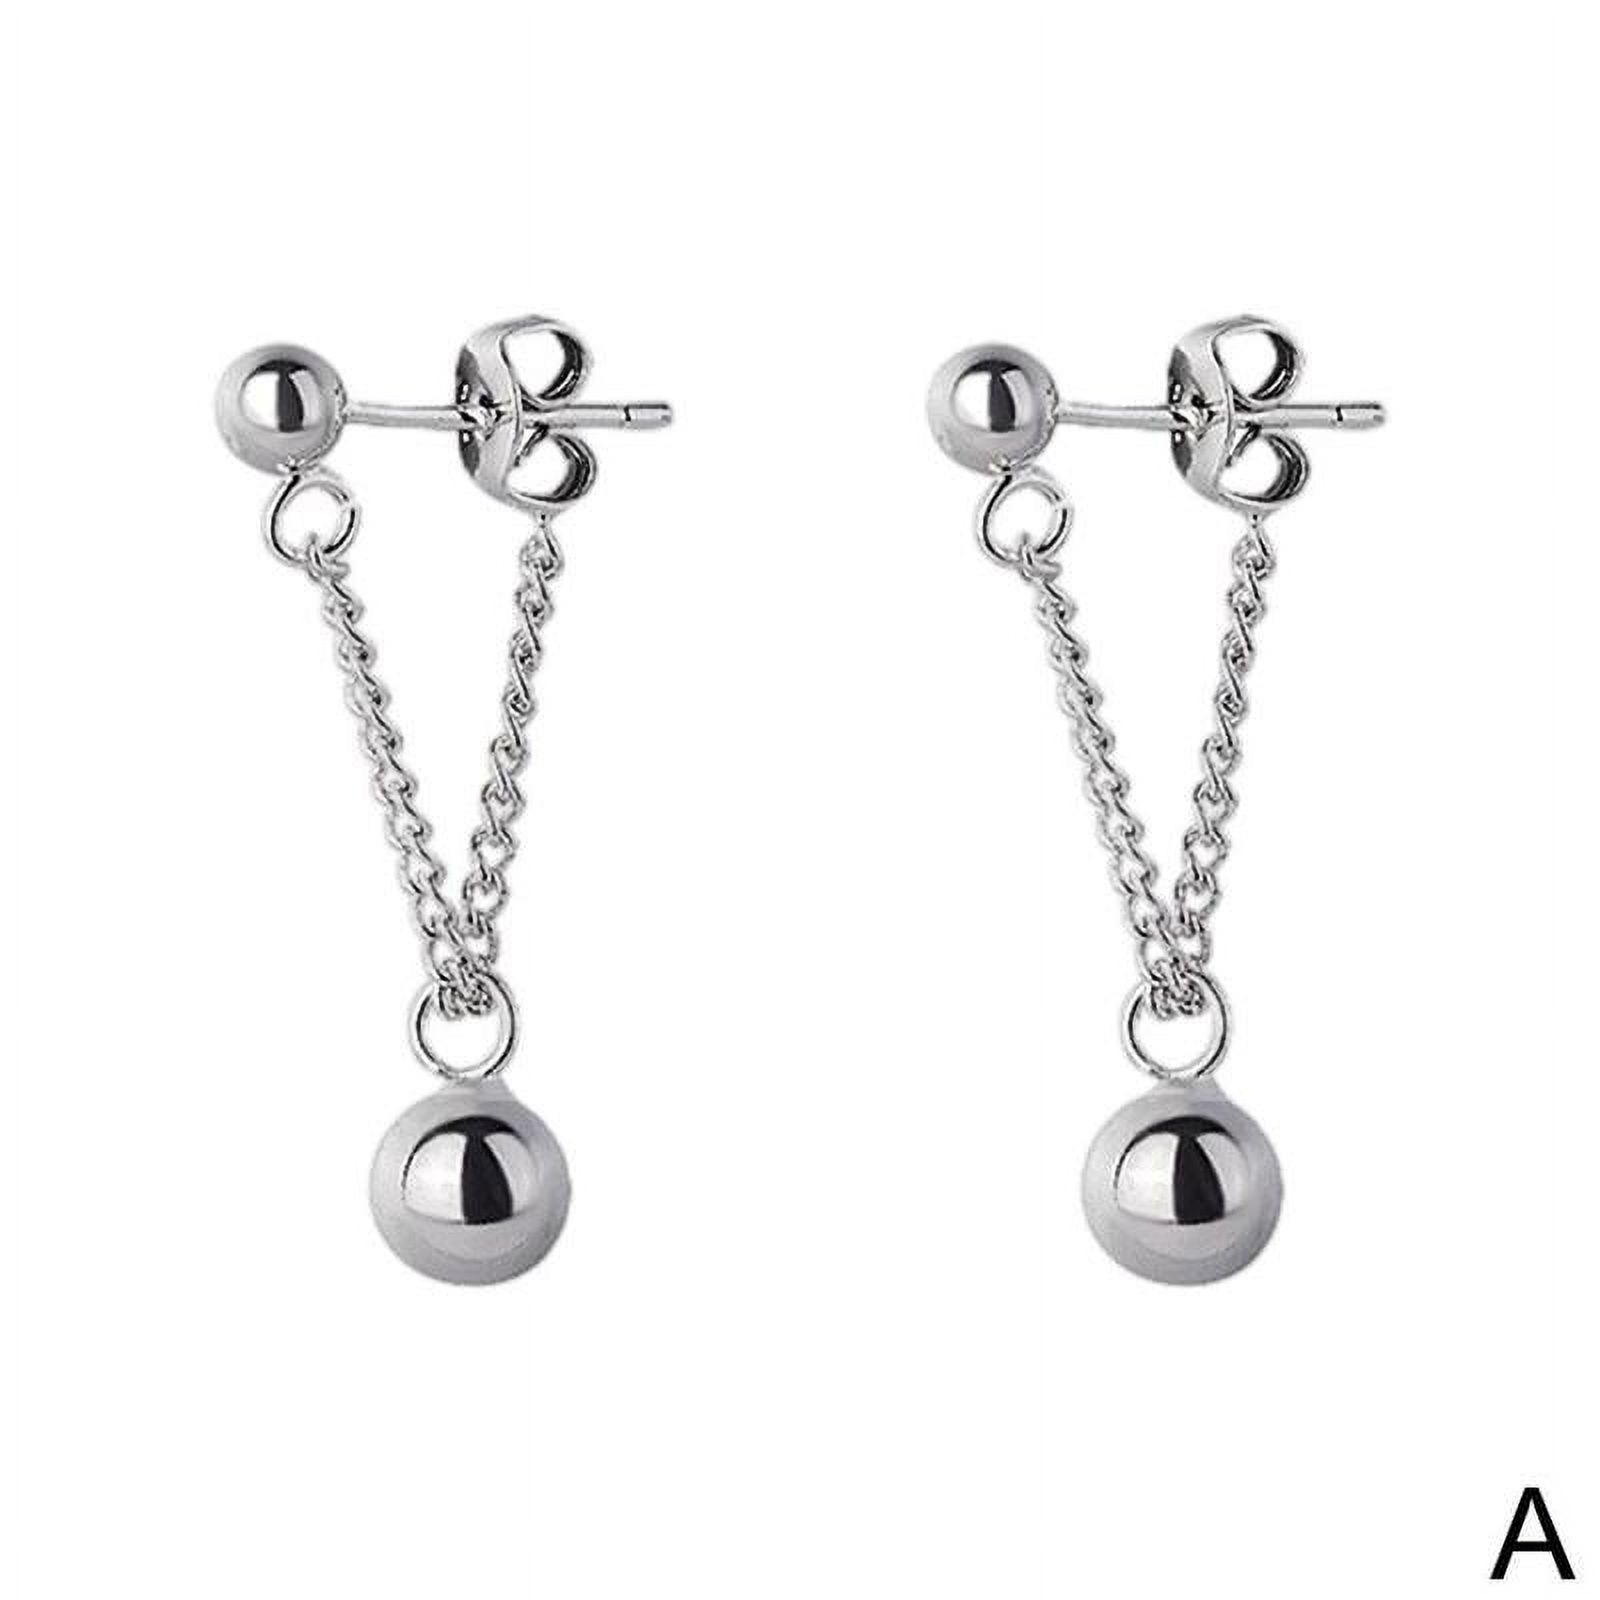 Silver Earrings Triangle Chain Drop Stud Earrings Women Butterfly Heart Star Crystal Dangle Earrings Studs Metal Chain Bead Earrings Jewelry Gifts K4A0 - image 1 of 9